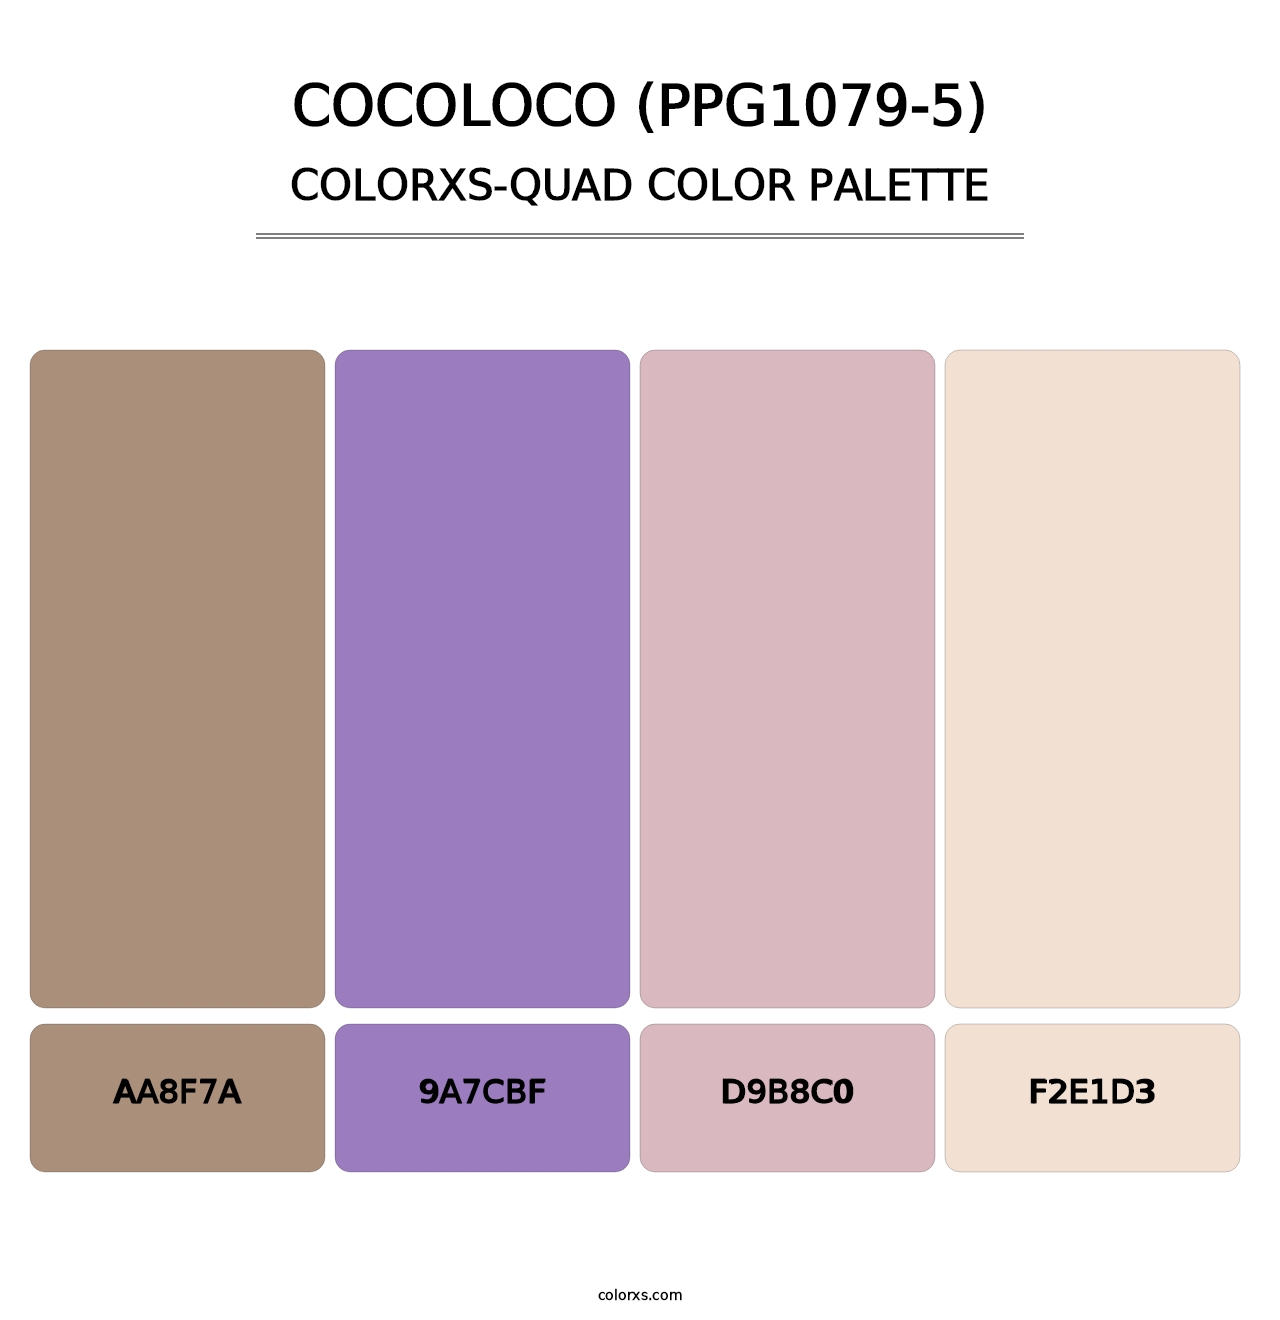 Cocoloco (PPG1079-5) - Colorxs Quad Palette